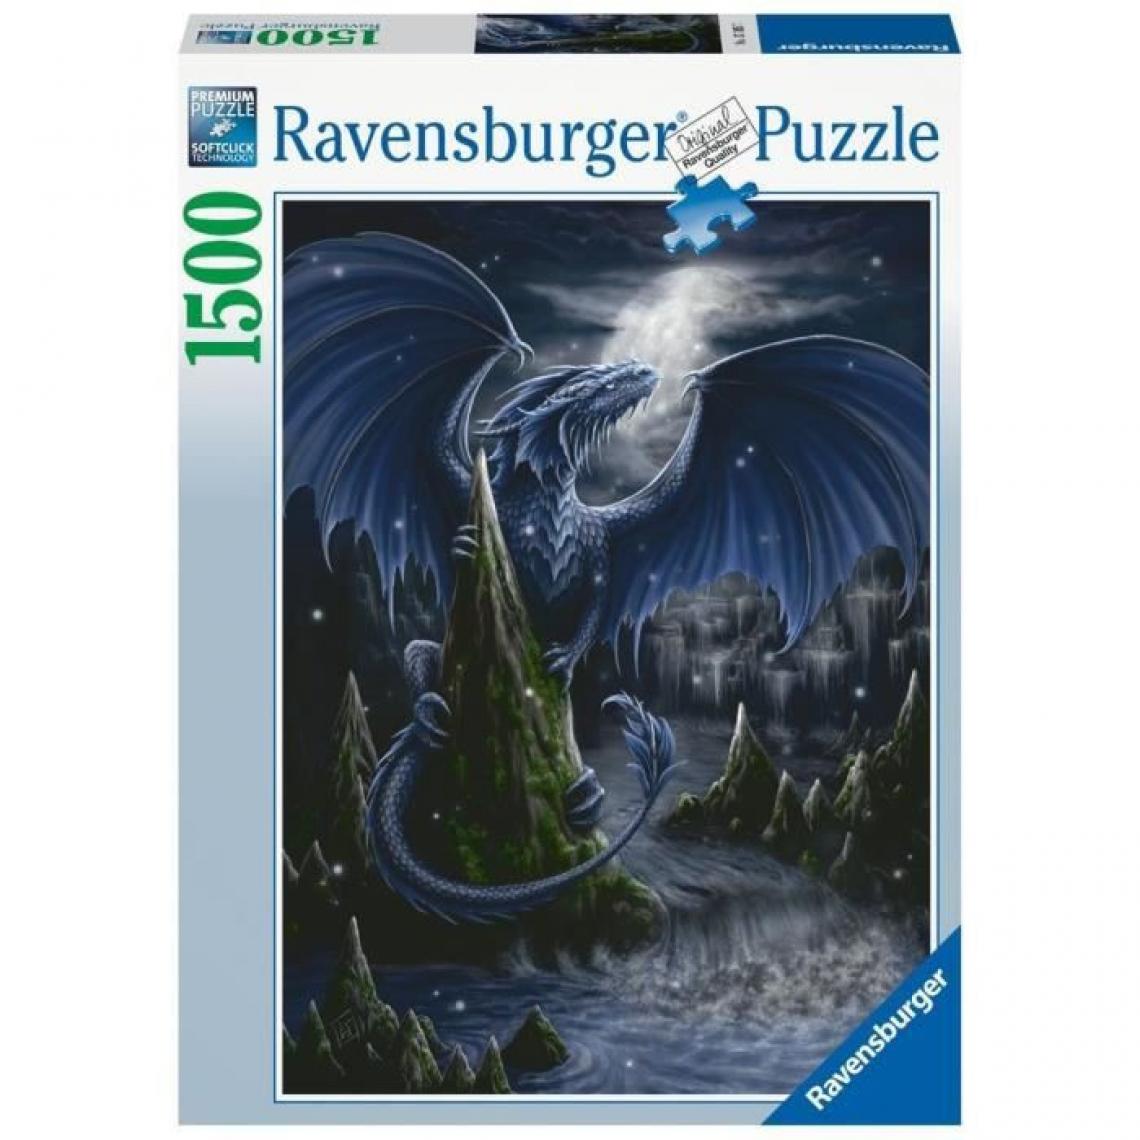 Ravensburger - Ravensburger - Puzzle 1500 pieces - Le dragon bleu - Animaux